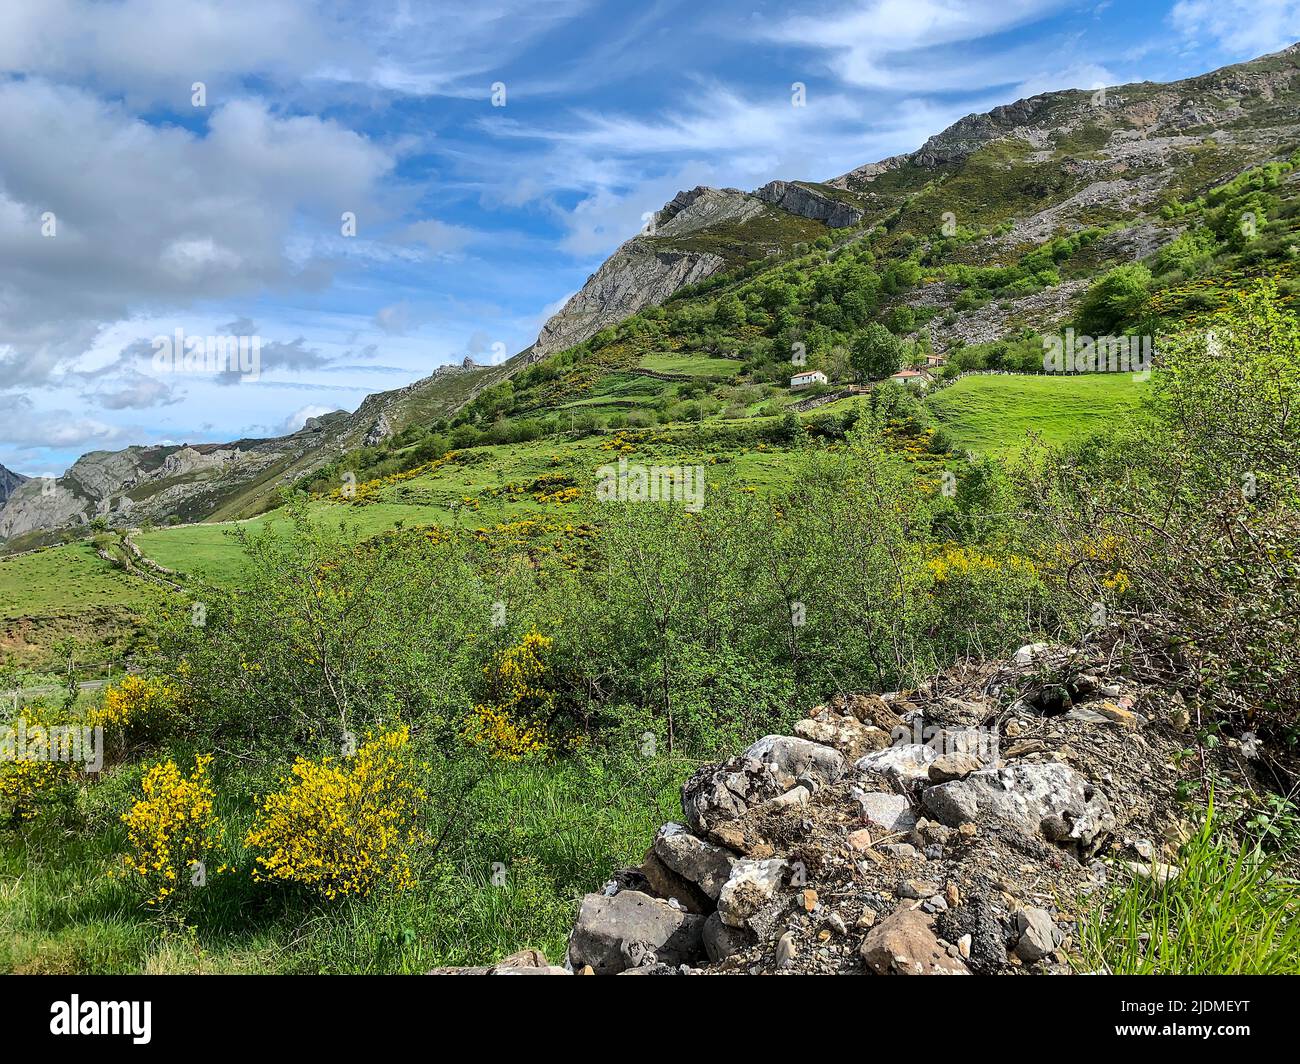 Spanien, Asturien. Panoramaaussicht auf die kantabrischen Berge, Naturpark Somiedo. Besen und Gorse wachsen an den Hängen. Stockfoto